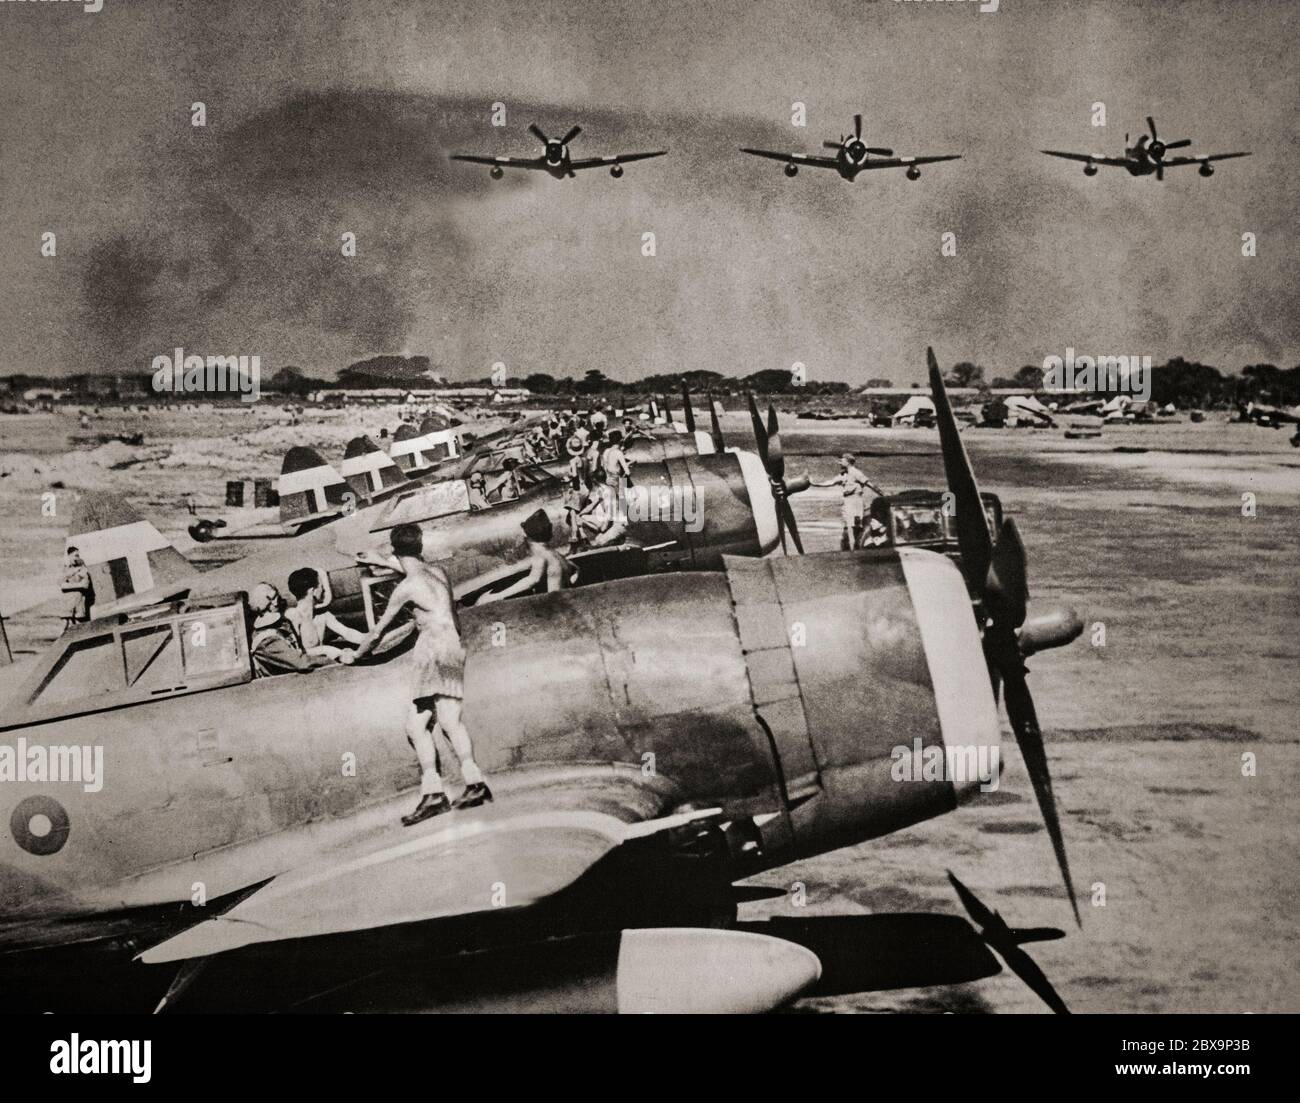 P-47 Thunderbolt-Kämpfer in einer RAF-Basis in Burma starten, um während der Burma-Kampagne 1945 die zurückziehende japanische Armee zu bomben. Der Thunderbolt war als ein kurzer bis mittlerer Reichweite Escort Kämpfer in Höhenluft-Luft-Kampf und Boden-Angriff in den europäischen und pazifischen Theatern wirksam. Stockfoto